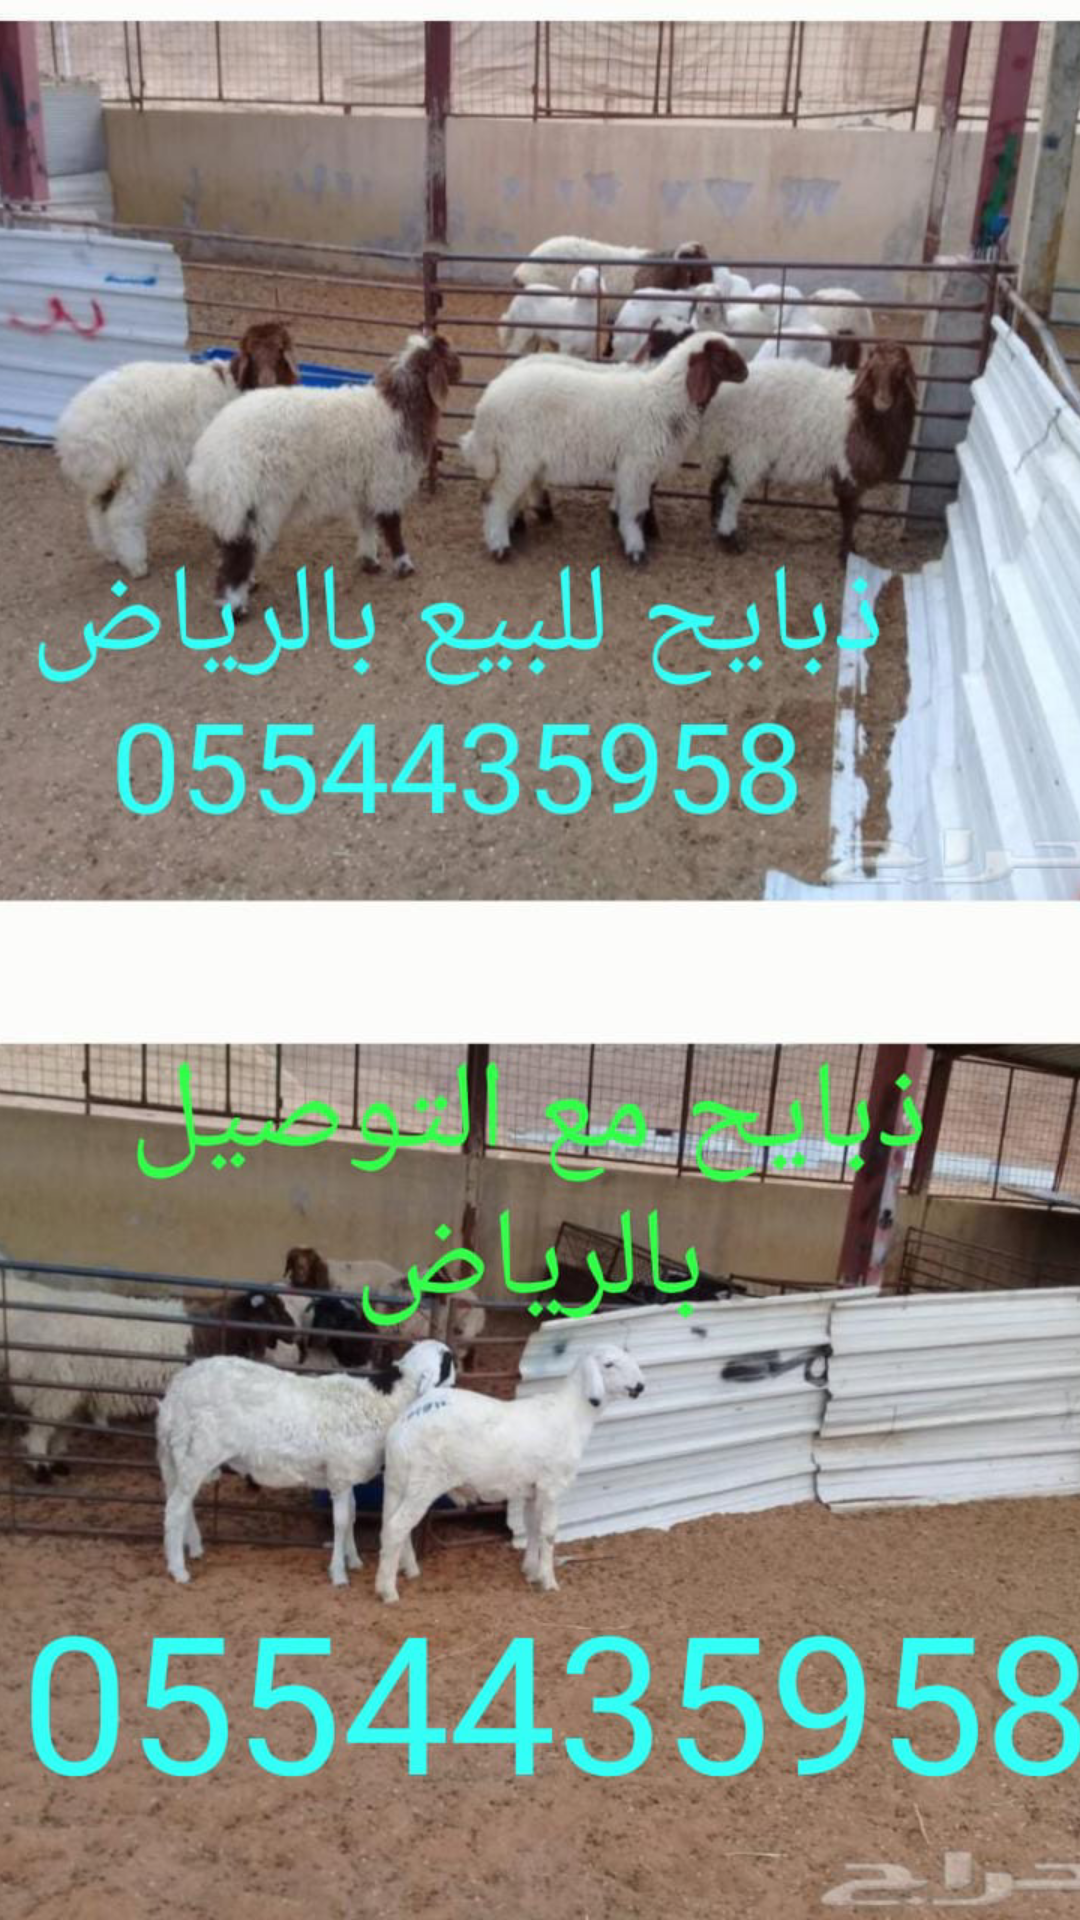 ذبايح للبيع في الرياض ابوفهد لبيع الذبائح في الرياض 0554435958  P_1212myezc1